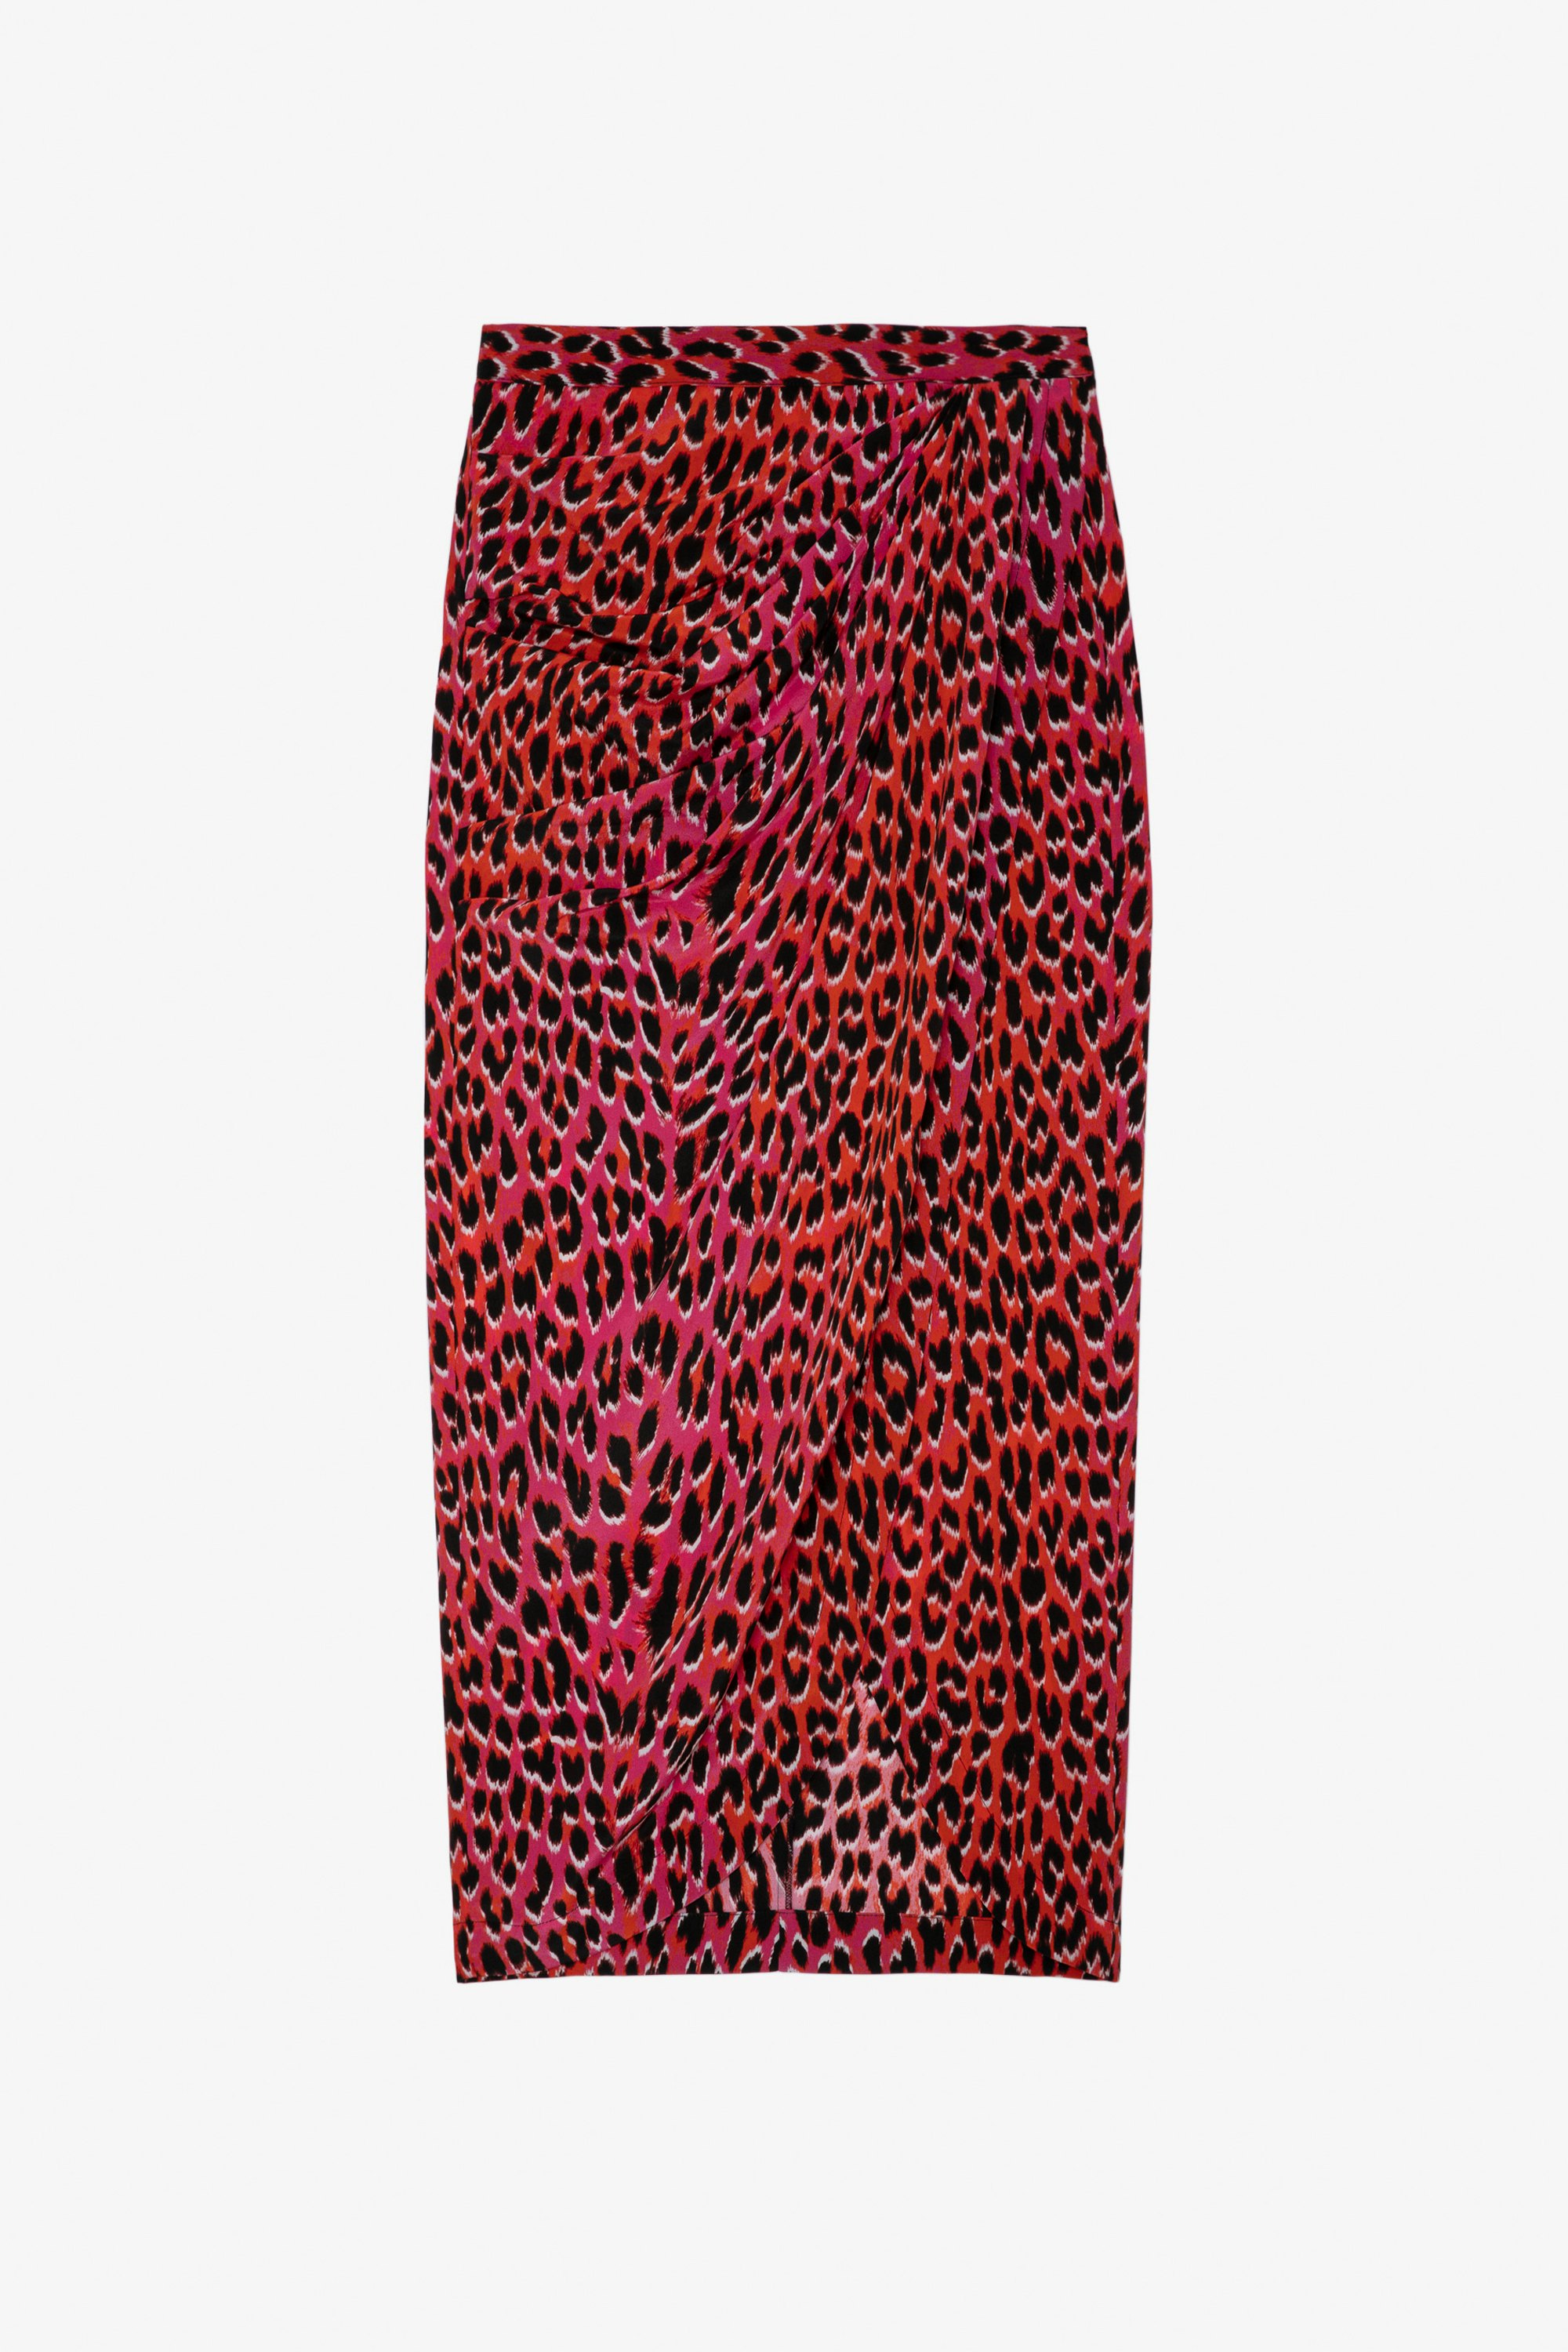 Jamelia Leopard Silk Skirt - Women’s long draped leopard-print pink silk skirt.